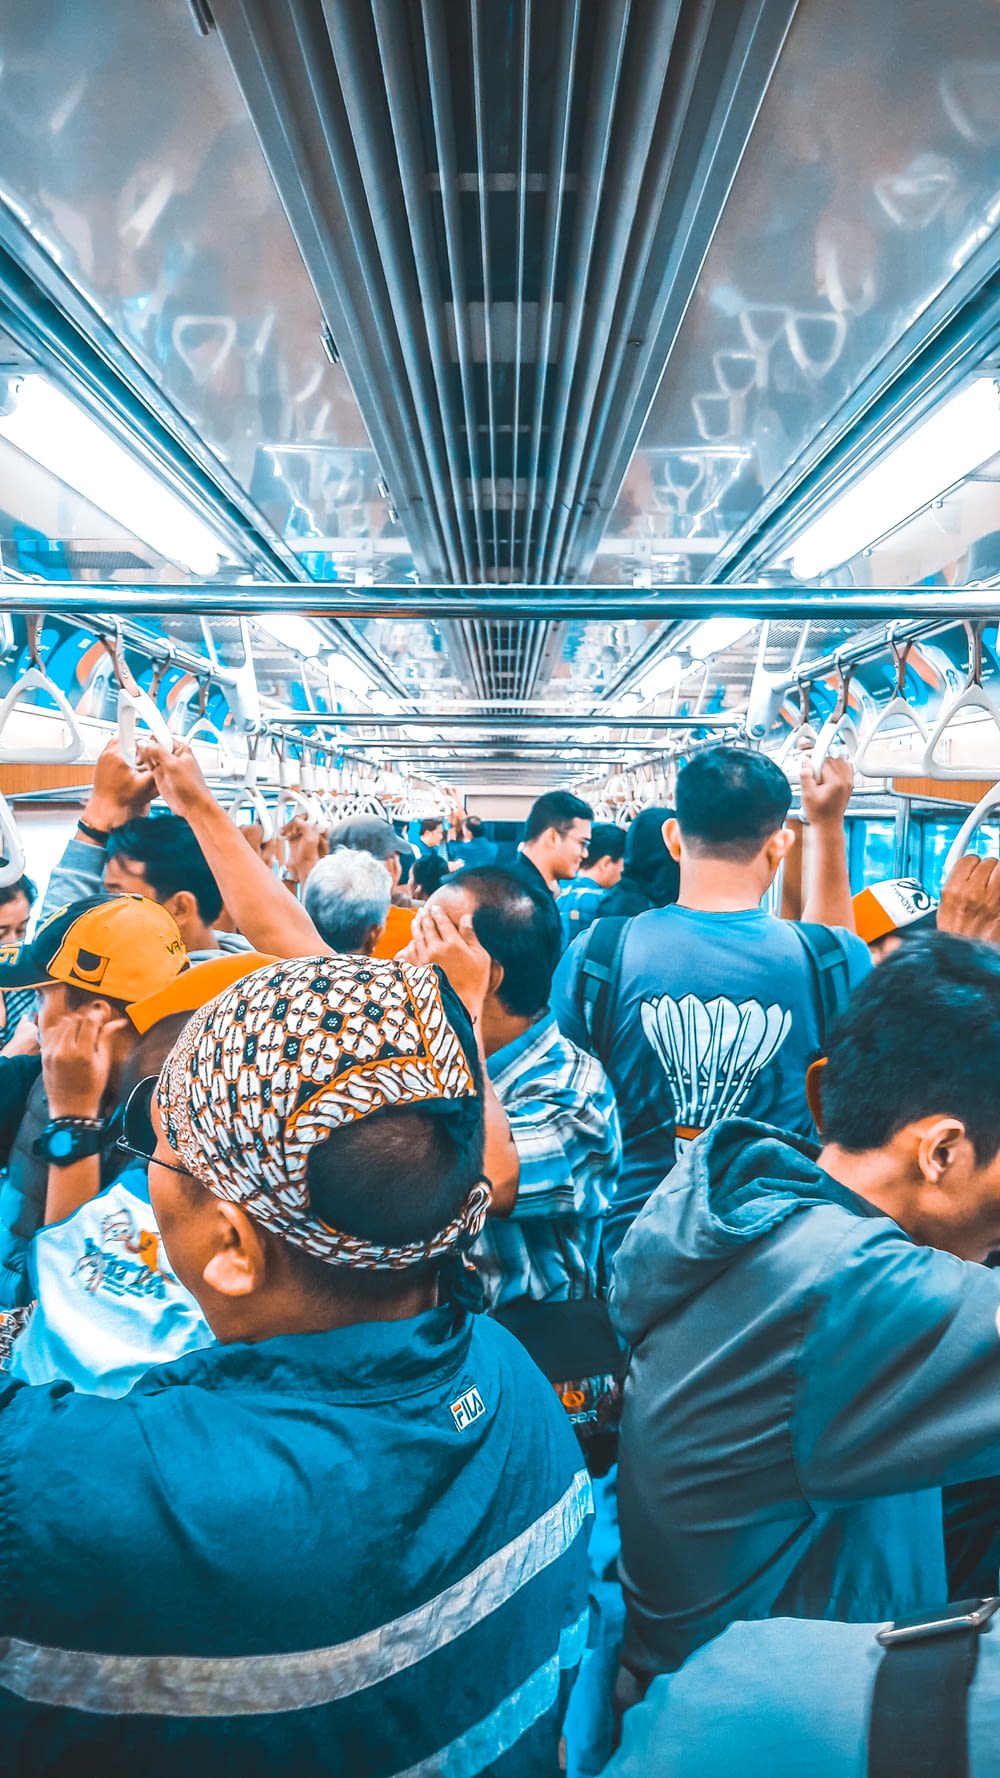 crowd of people inside train